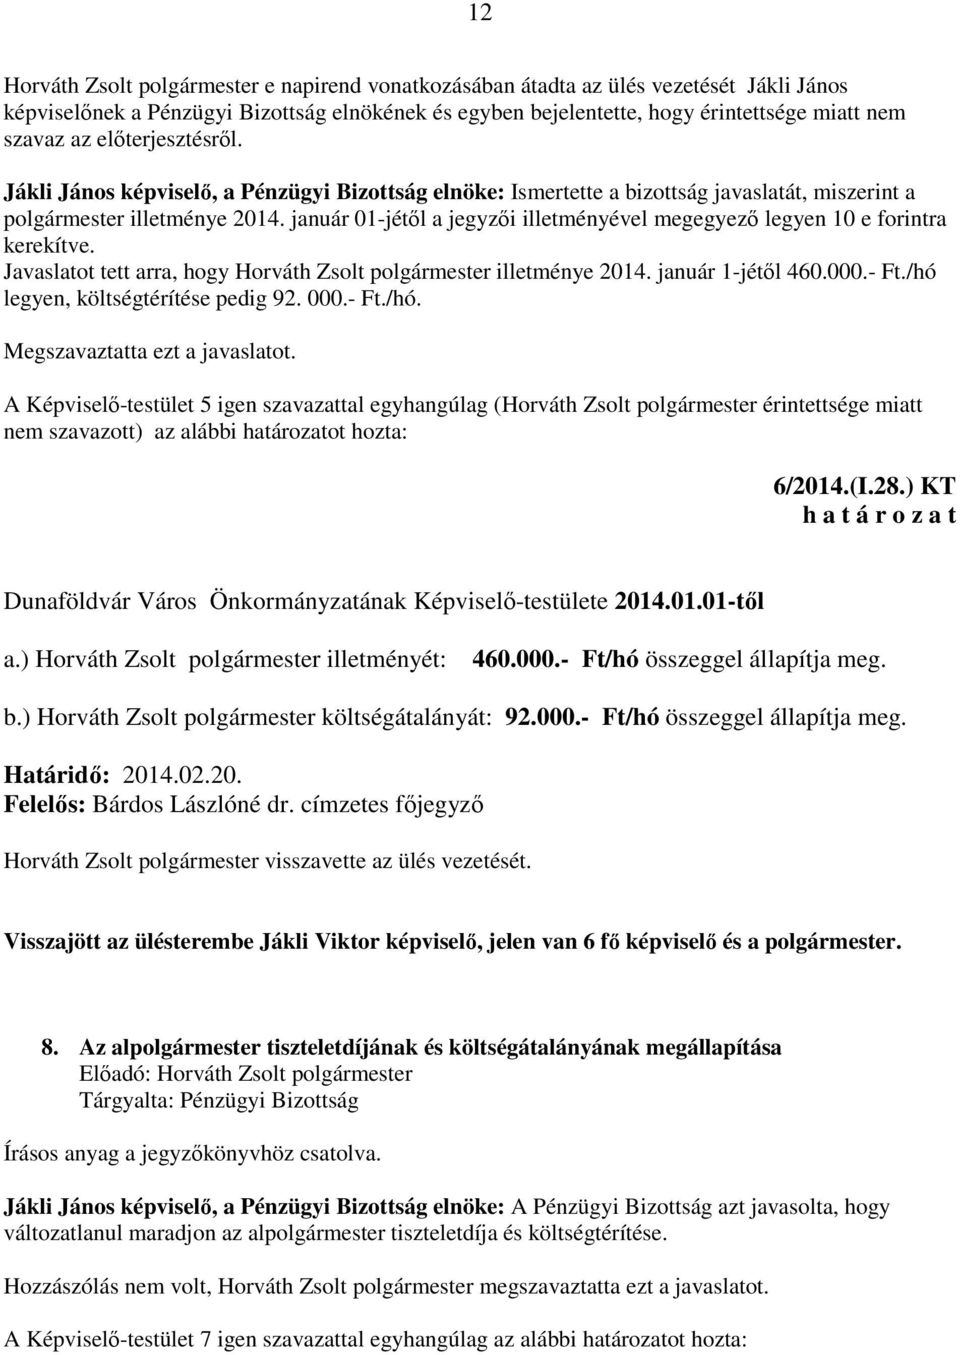 január 01-jétől a jegyzői illetményével megegyező legyen 10 e forintra kerekítve. Javaslatot tett arra, hogy Horváth Zsolt polgármester illetménye 2014. január 1-jétől 460.000.- Ft.